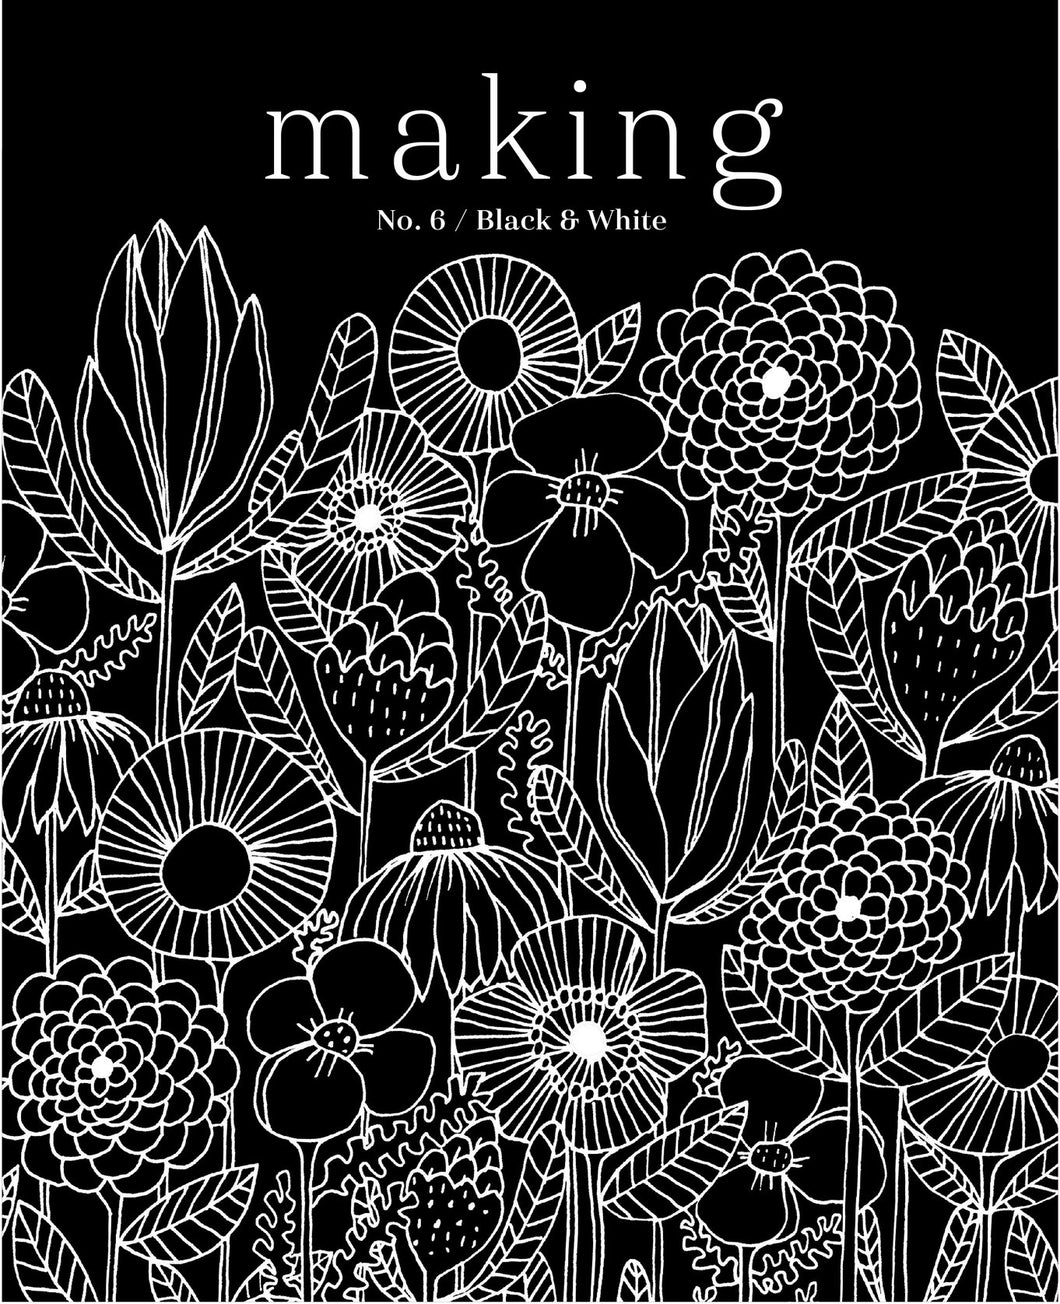 Making Zine | Making No.6 : Black & White. October 2018.